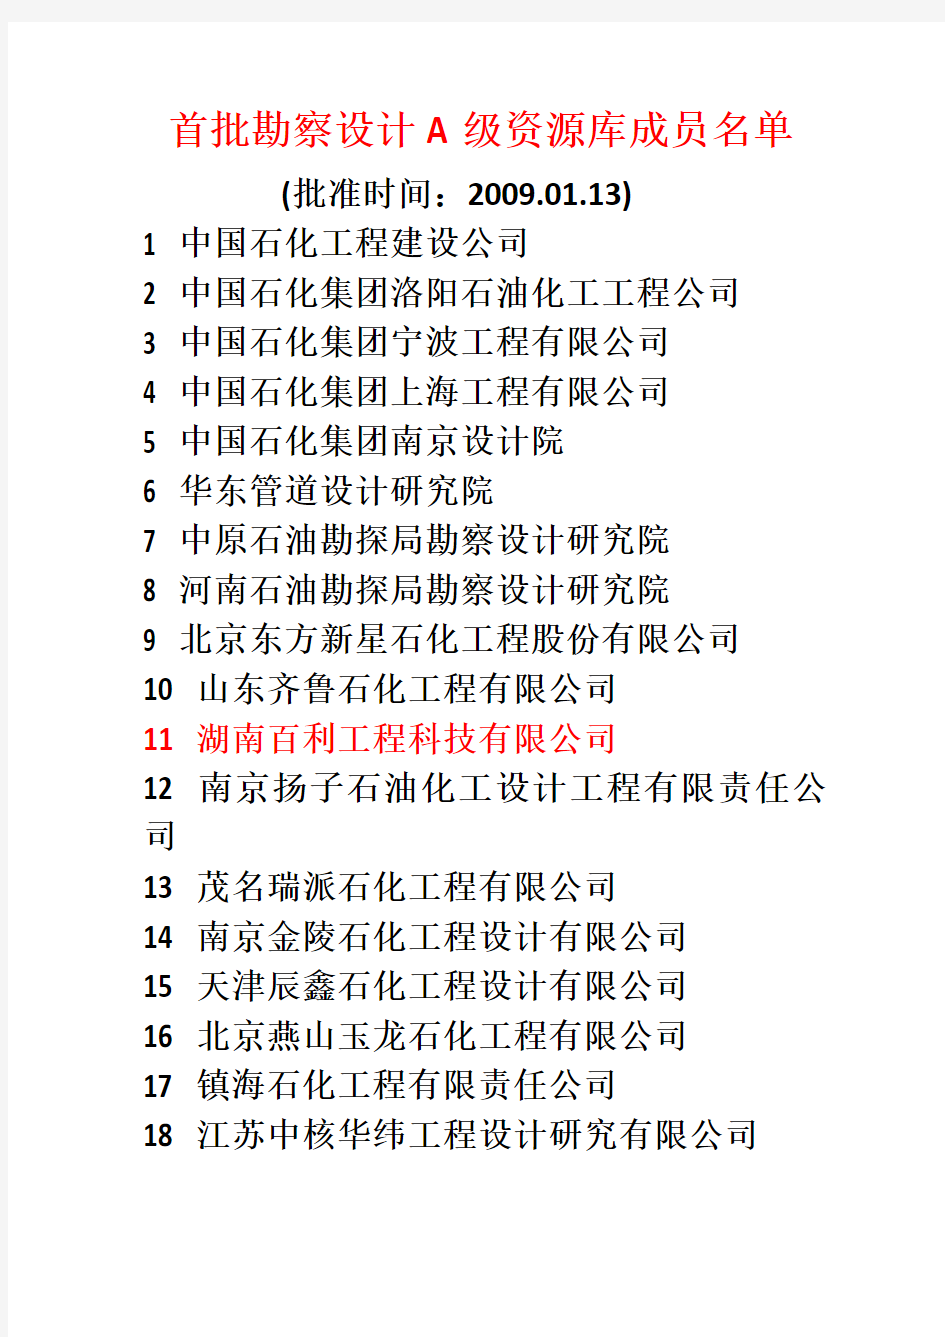 中国石化工程建设市场资源库成员名单(全国范围)